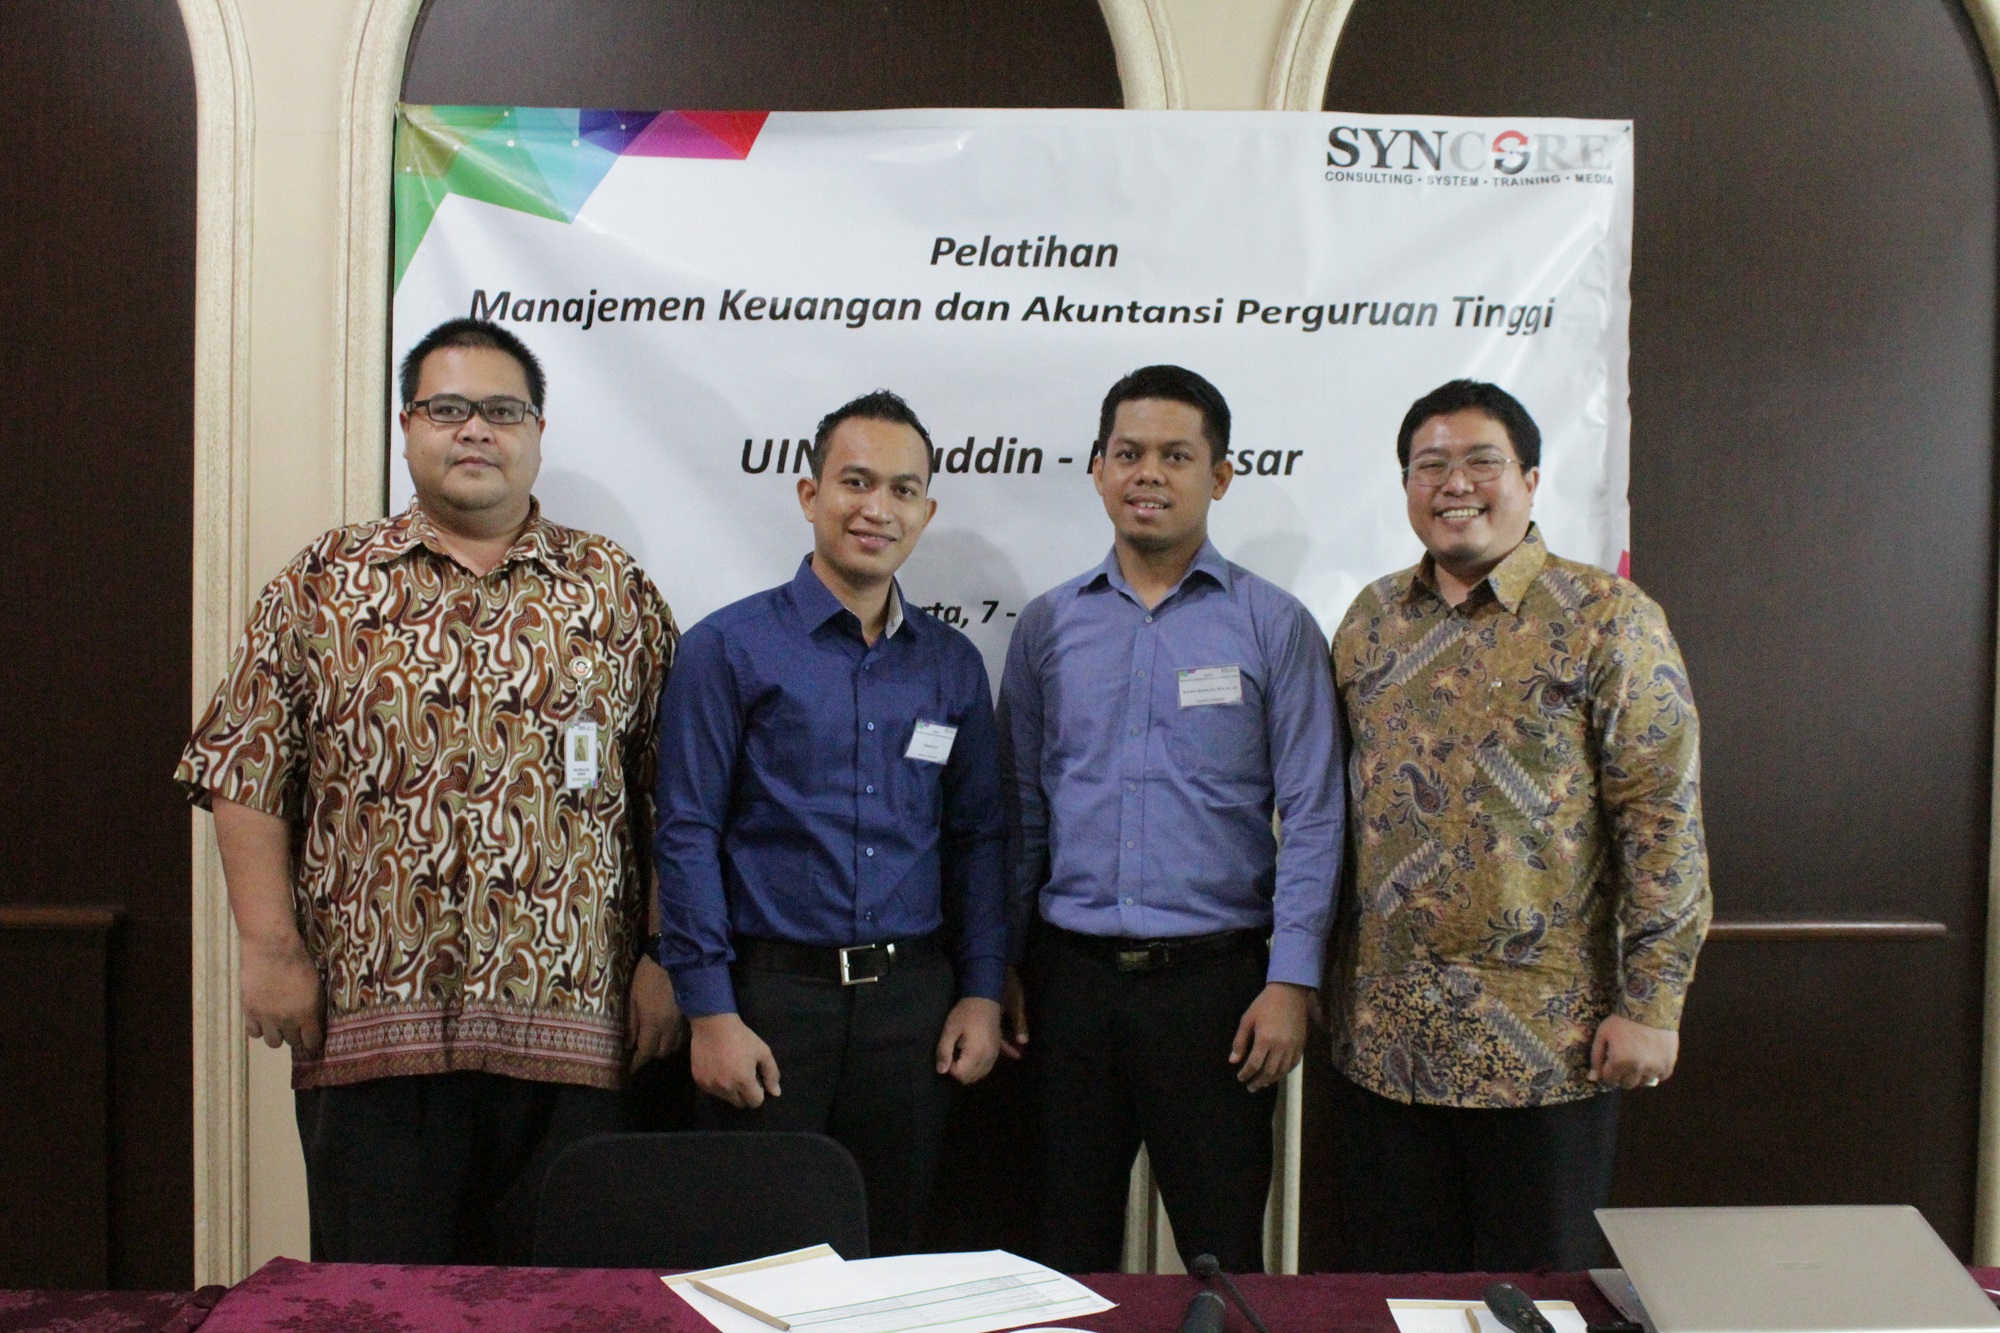 Pelatihan Manajemen Keuangan dan Akuntansi Perguruan Tinggi oleh PT. SYNCORE Yogyakarta